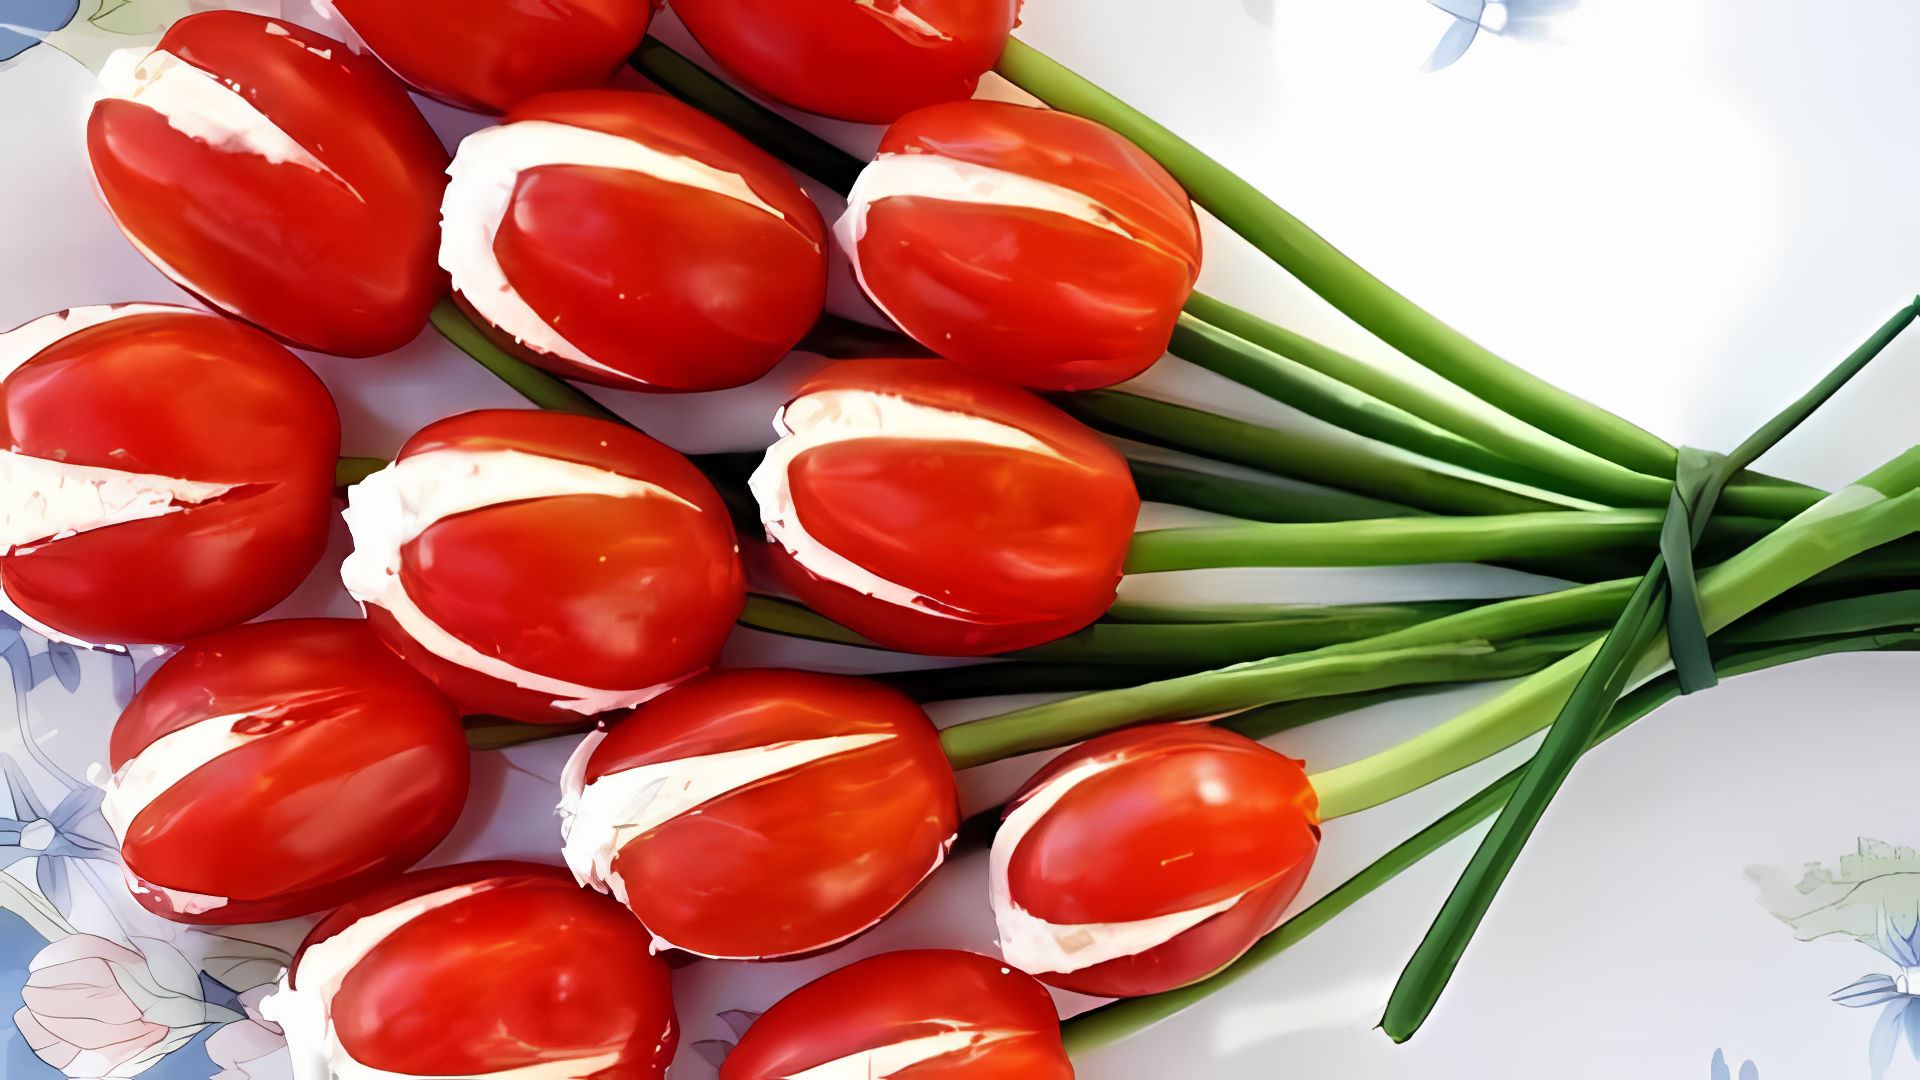 Закуска из помидор "Тюльпаны" - это оригинальное и вкусное блюдо, которое можно приготовить на 8 марта 2020 года